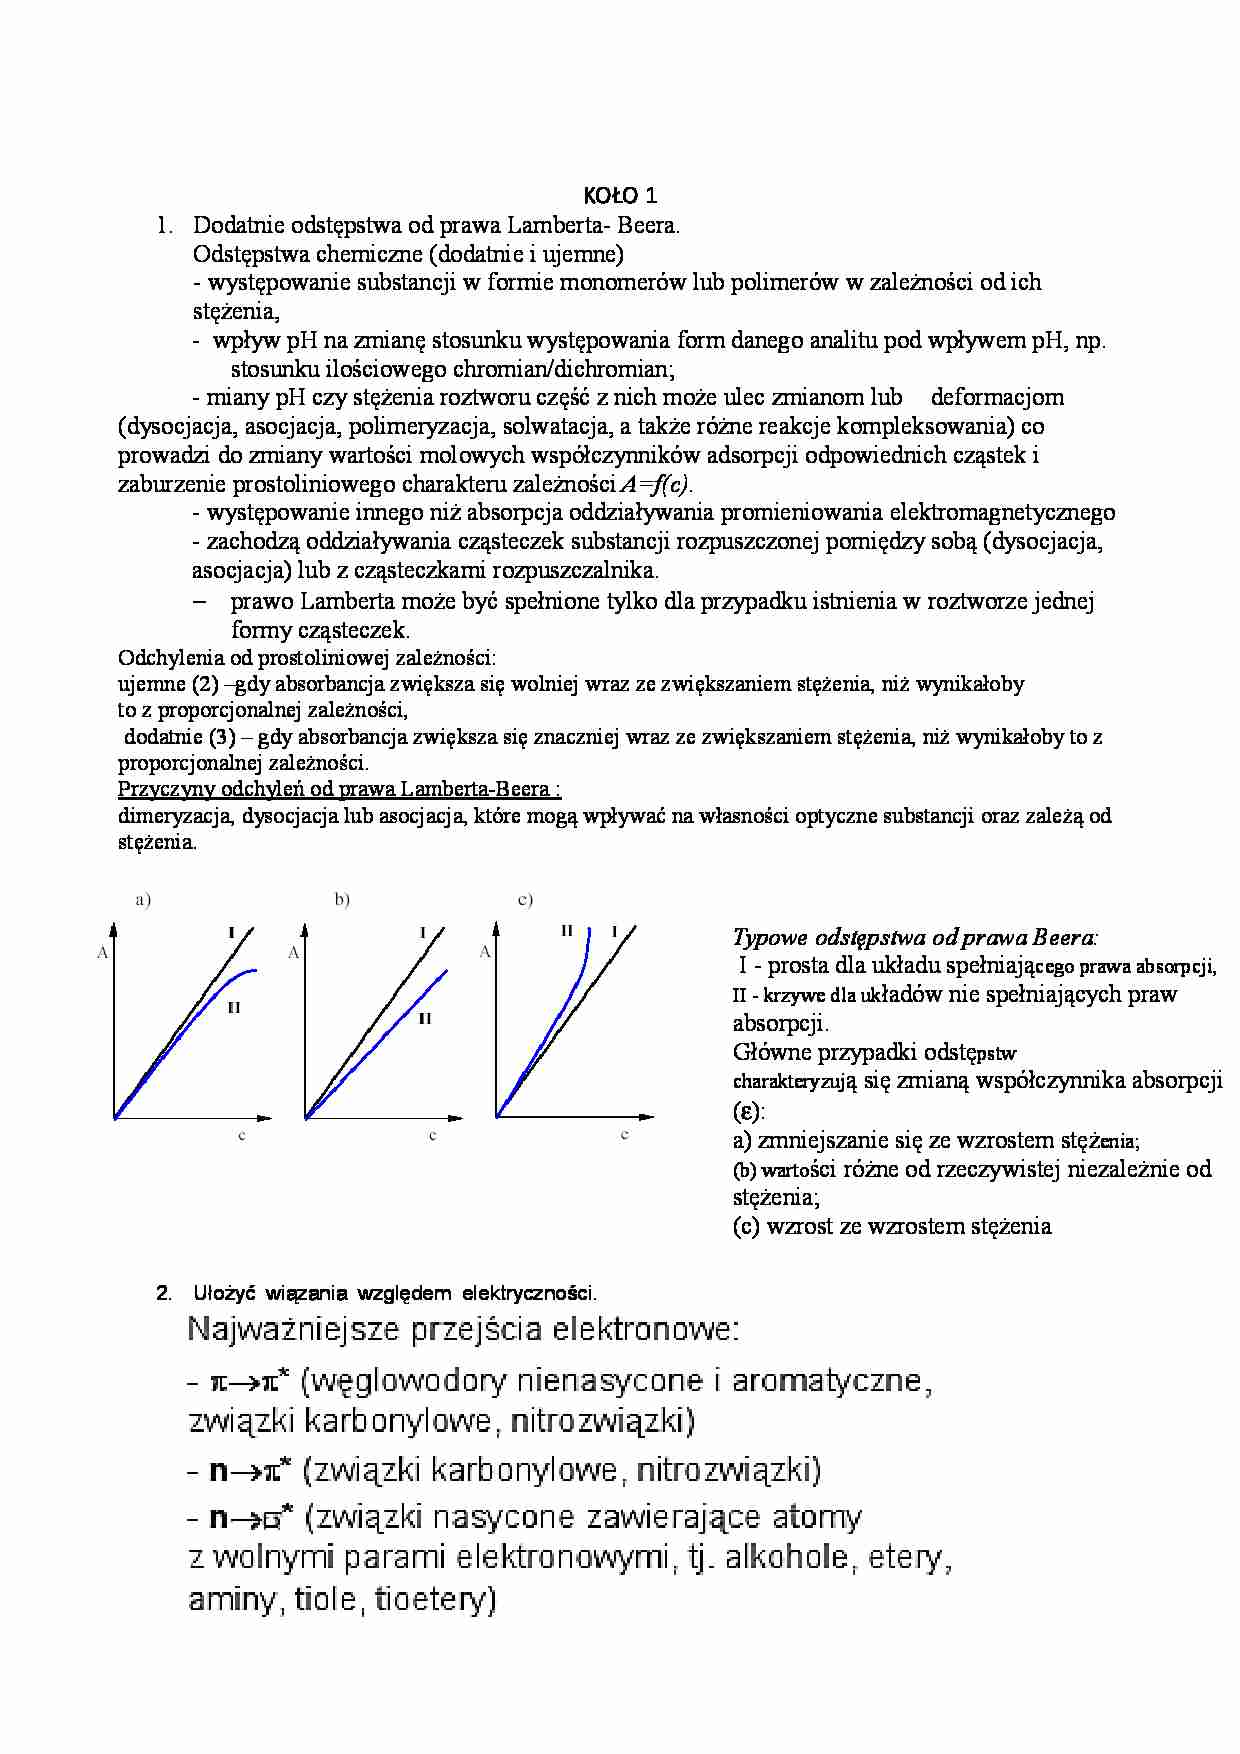 Analiza chemiczna biomolekułów - kolokwium 1 - strona 1